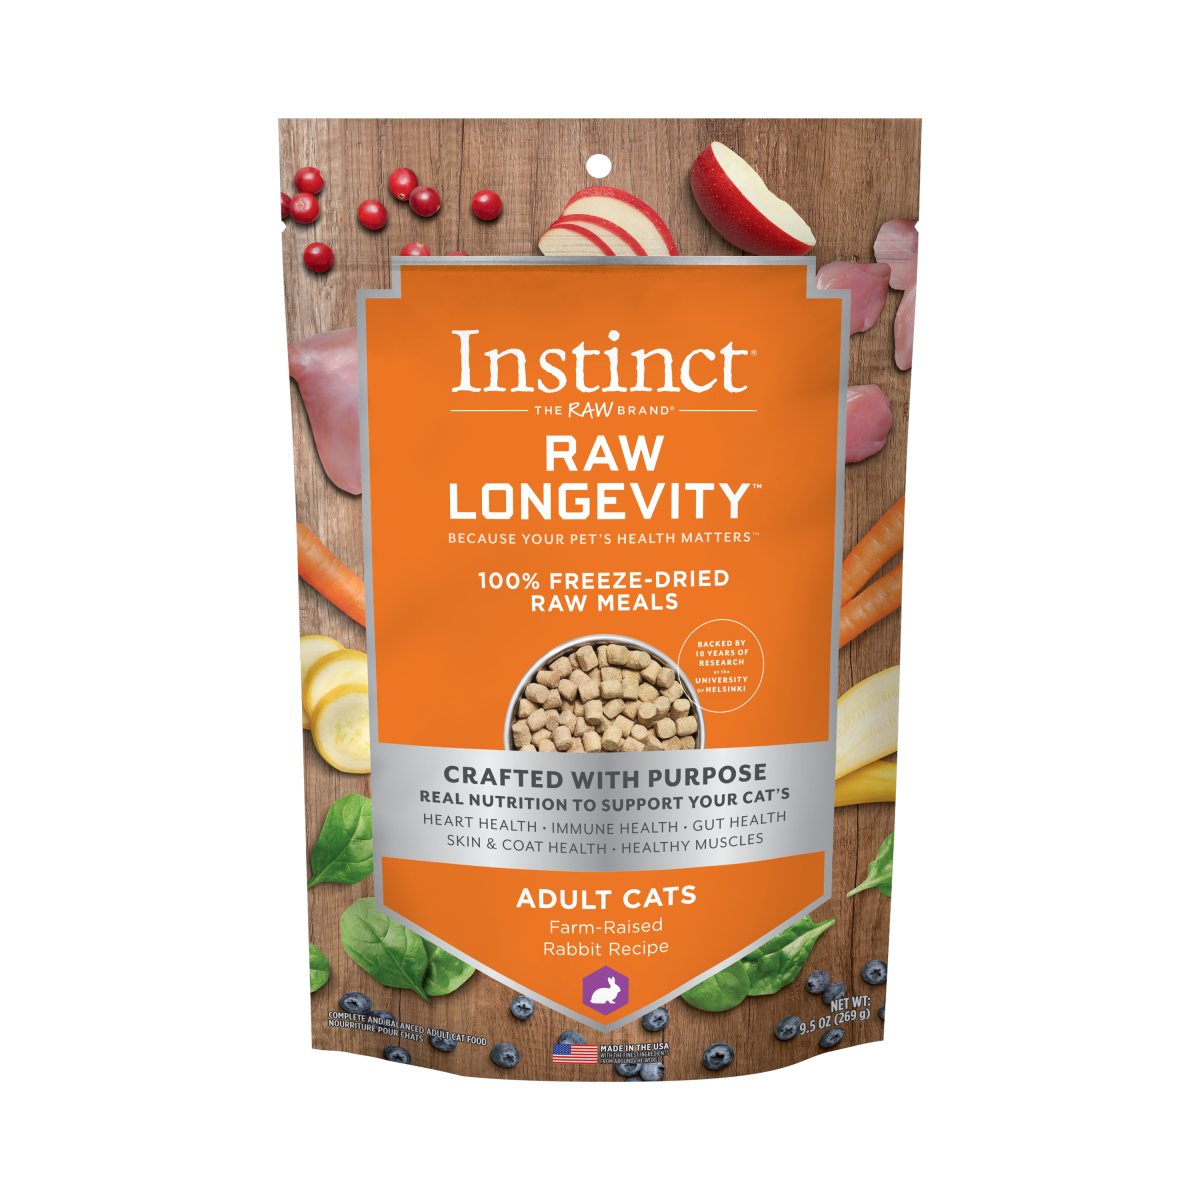 Instinct - Raw Longevity 100% Freeze-Dried Raw Meals Farm-Raised Rabbit Recipe